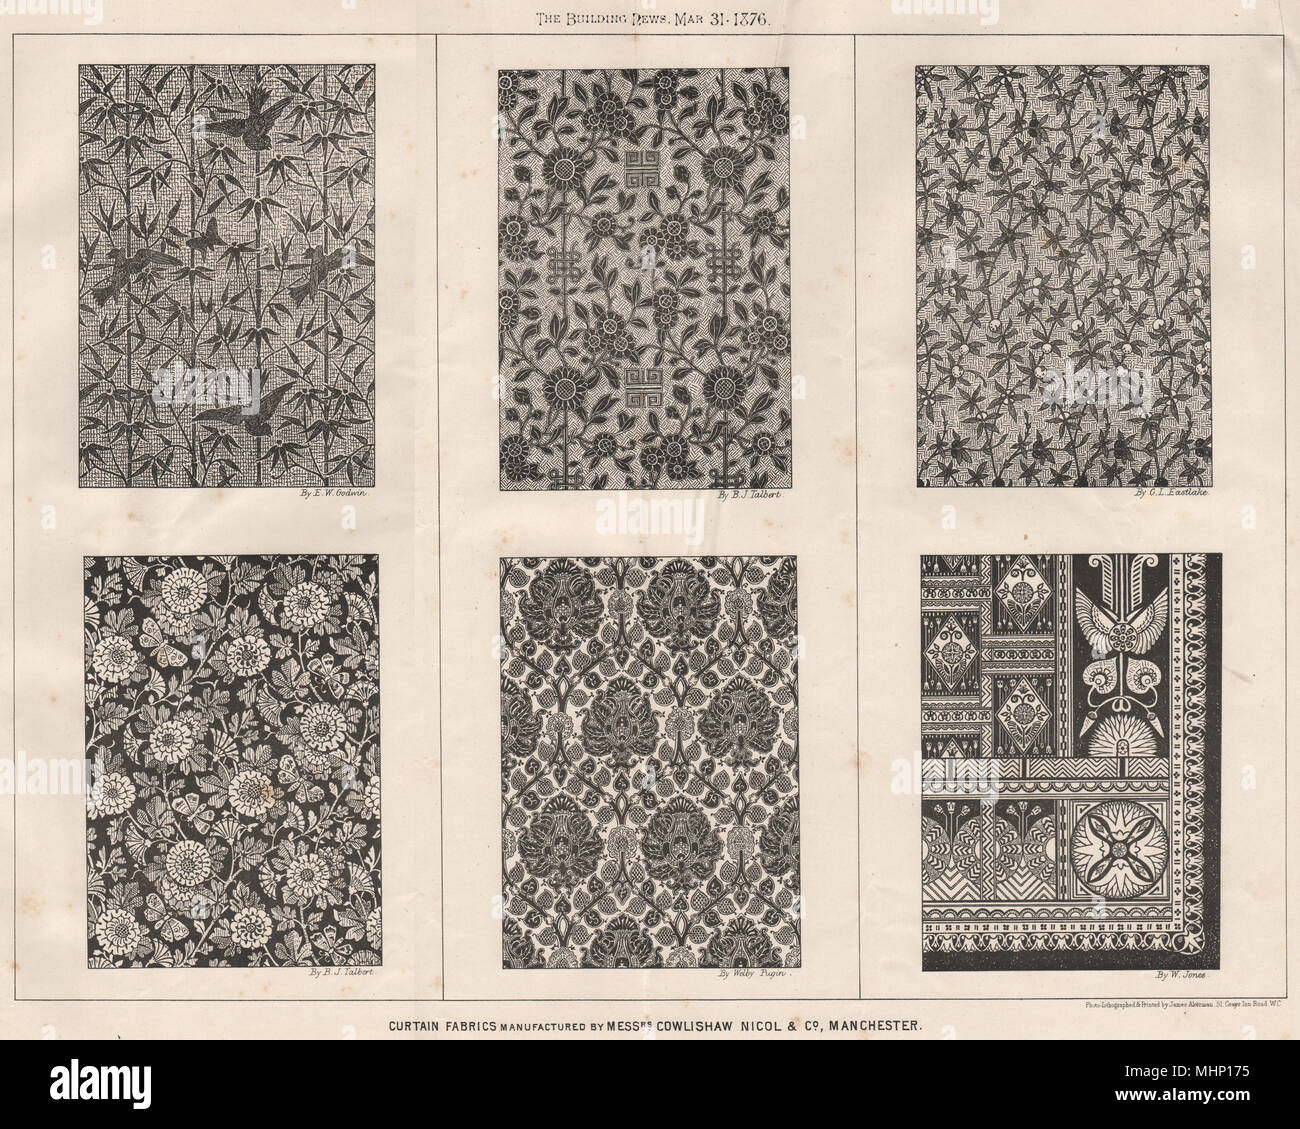 Tissus rideau fabriqué par Cowlishaw Nicol & Co., Manchester 1876 imprimer Banque D'Images